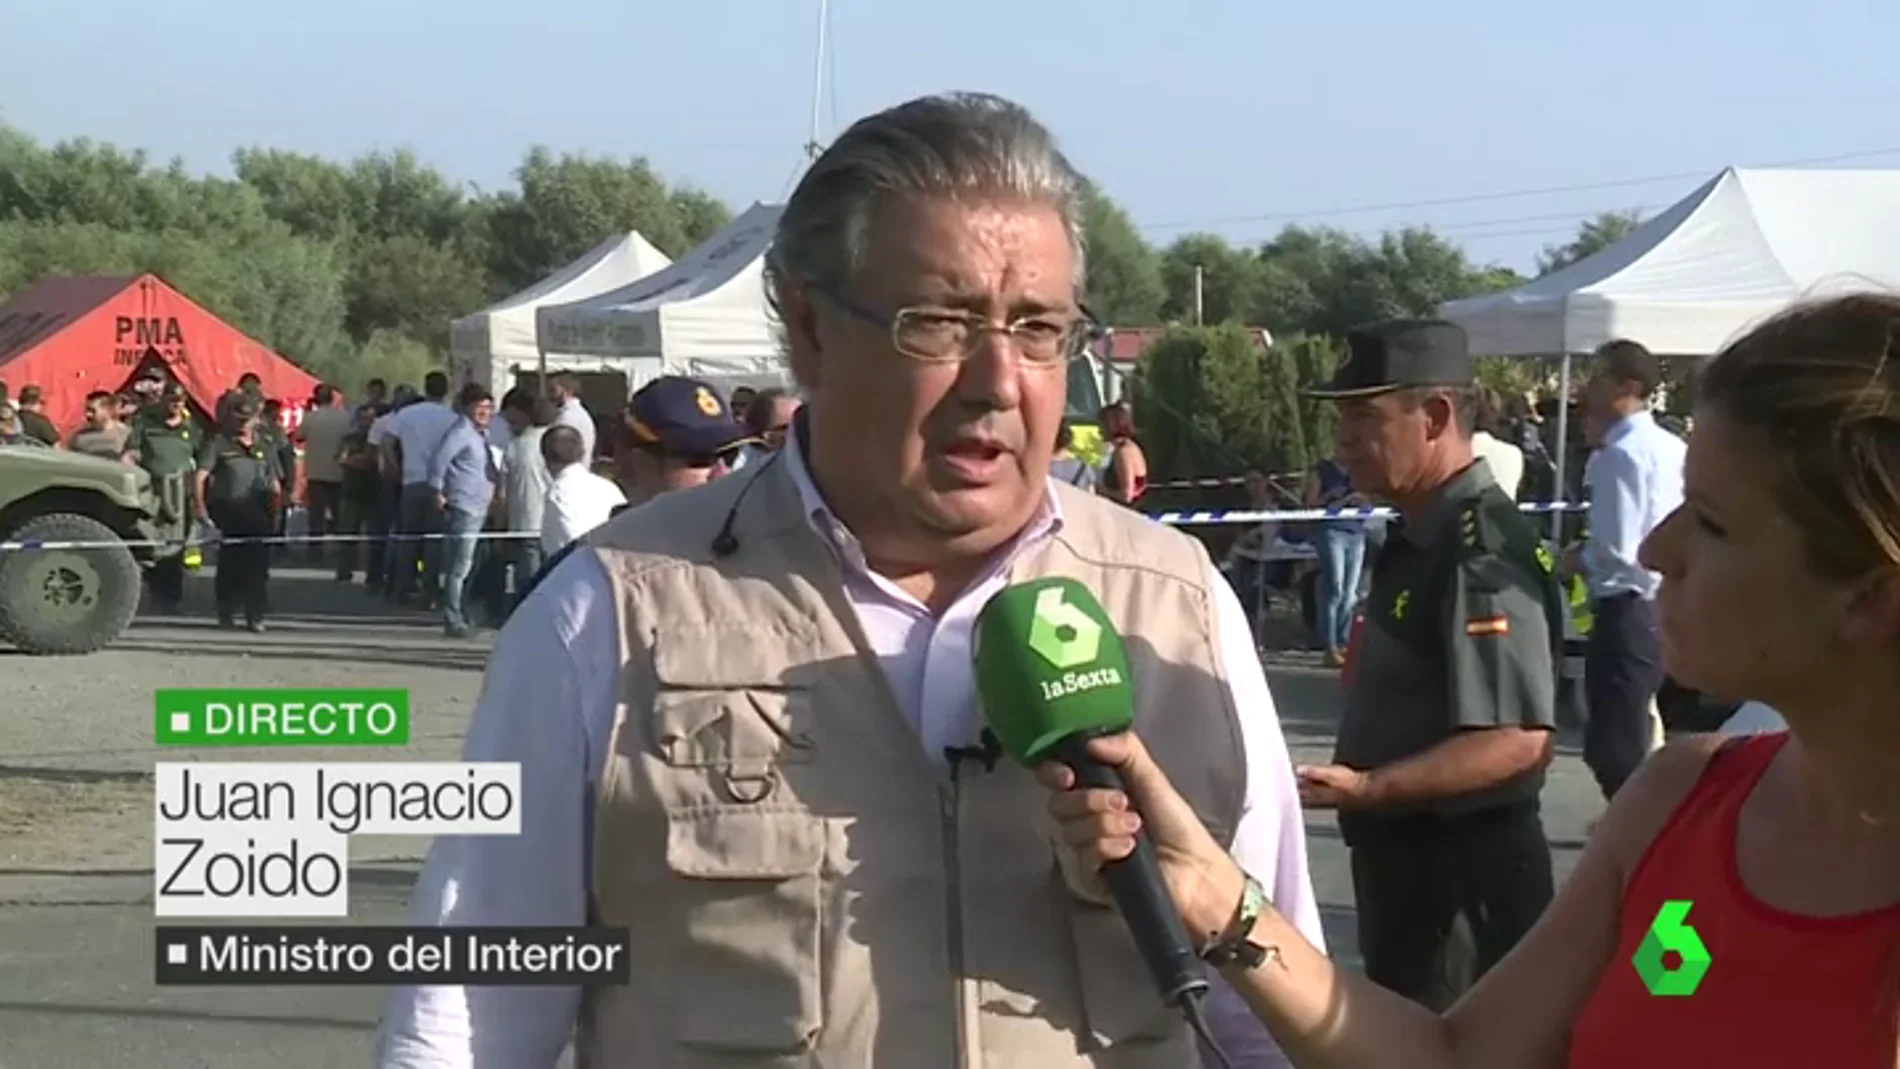 El ministro Zoido pide comprensión y tranquilidad tras el incendio en Huelva: "La situación está controlada"